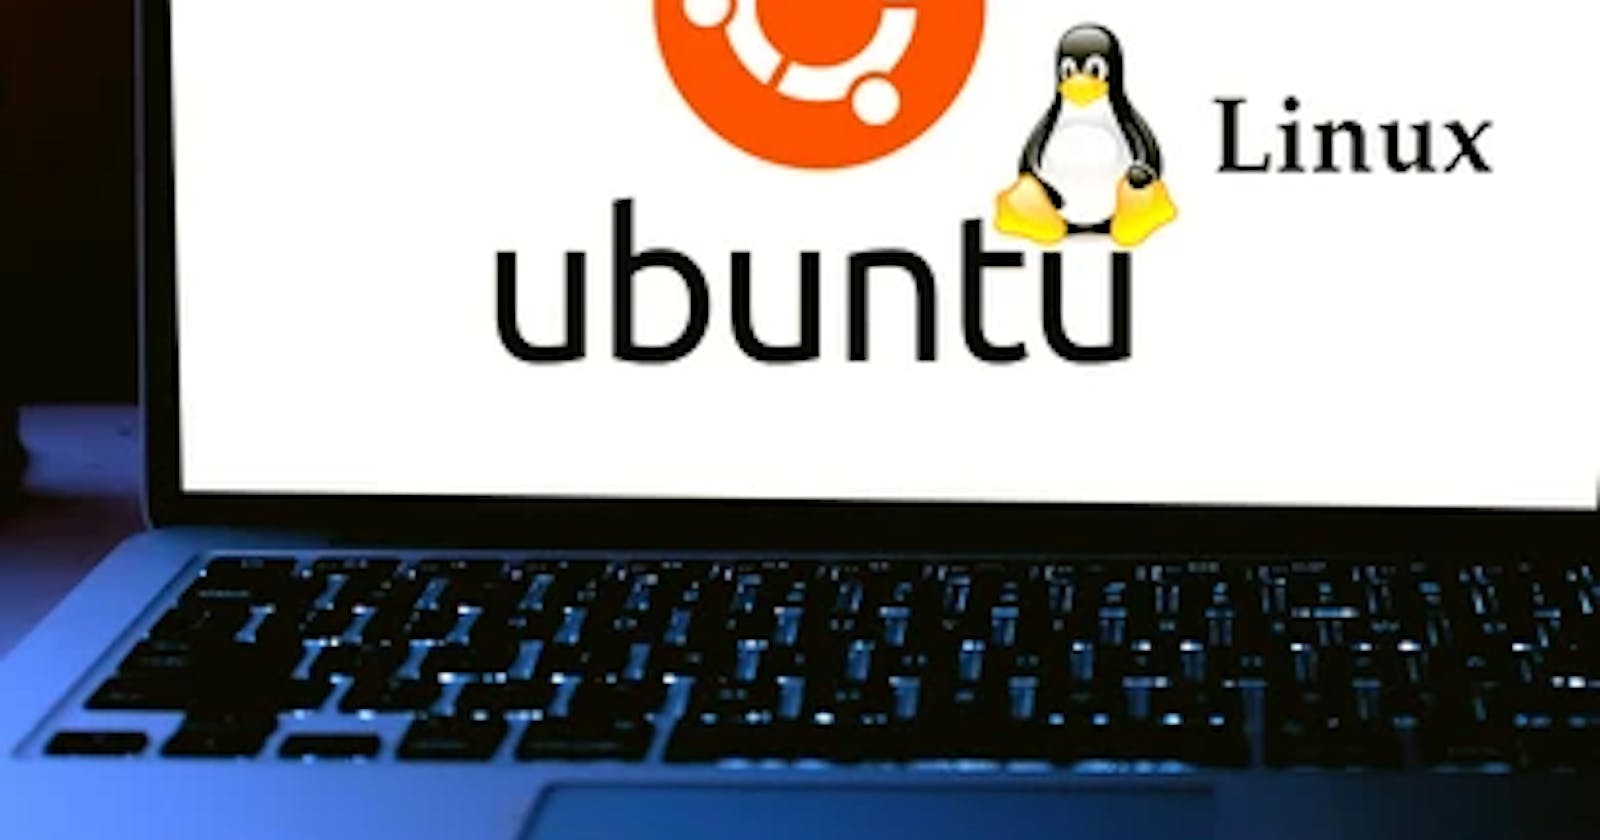 Basic Linux Commands